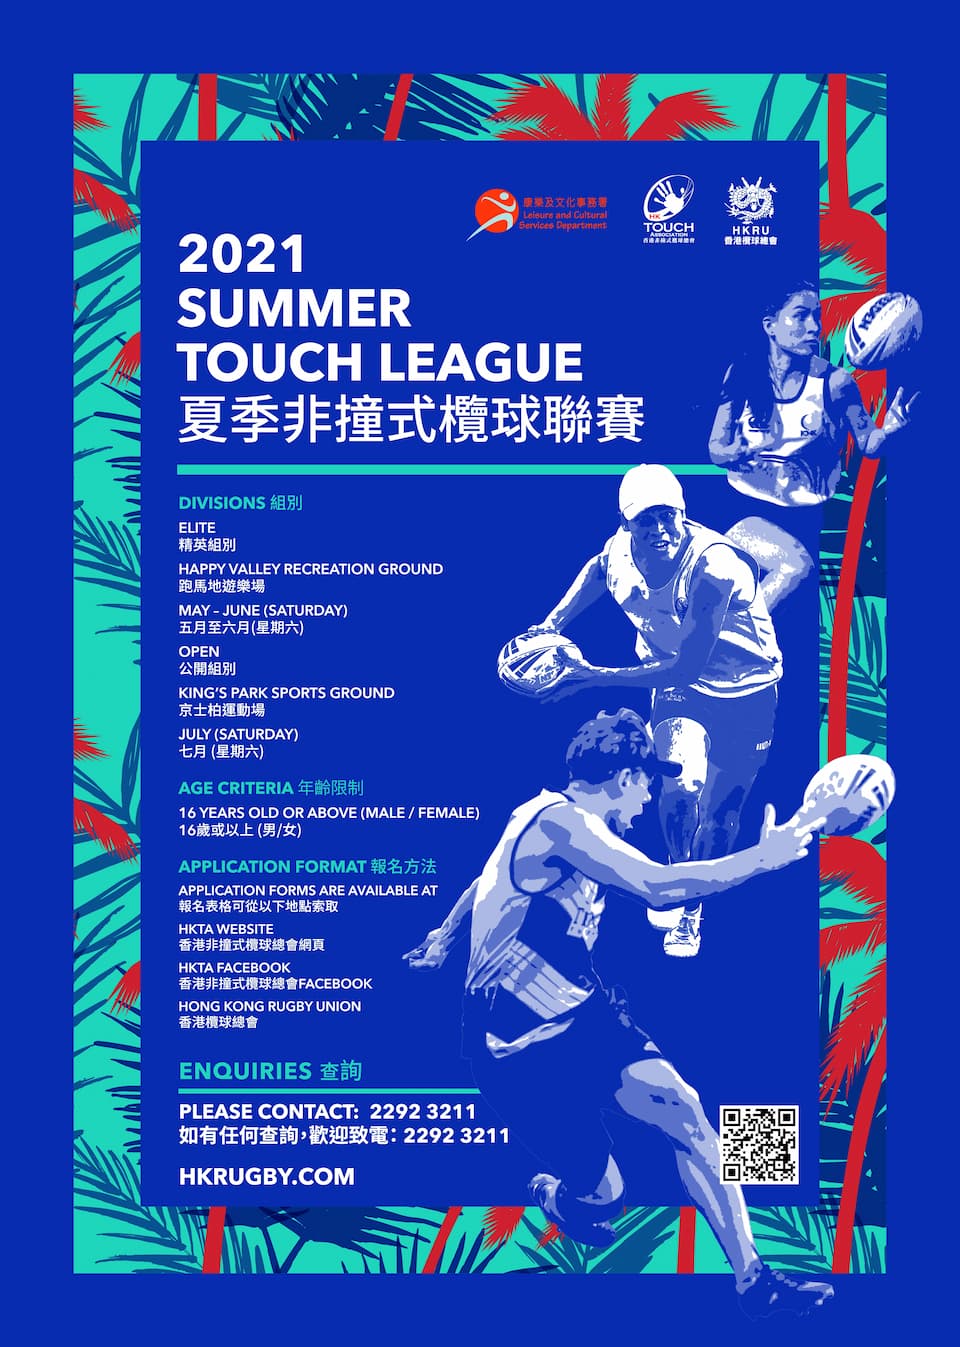 Hong Kong 2021 Summer Touch League information